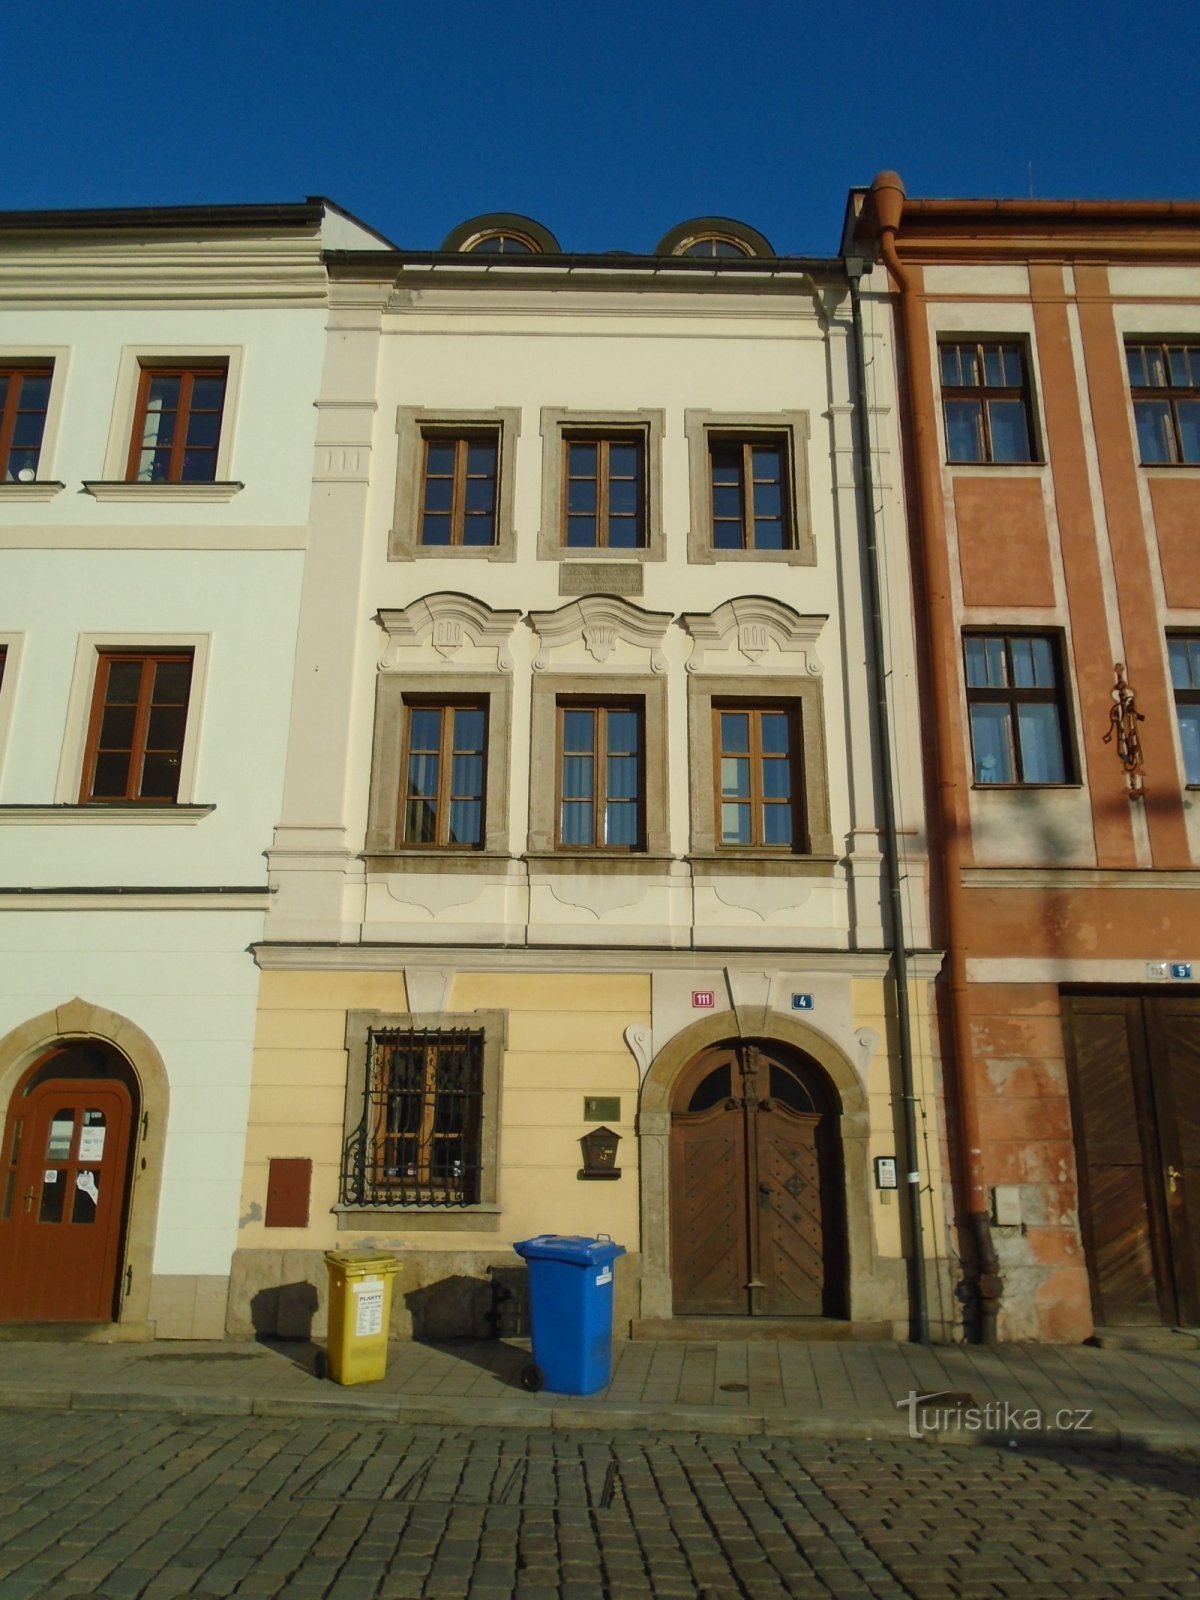 Malé náměstí no. 111 (Hradec Králové, 30.1.2019. huhtikuuta XNUMX)